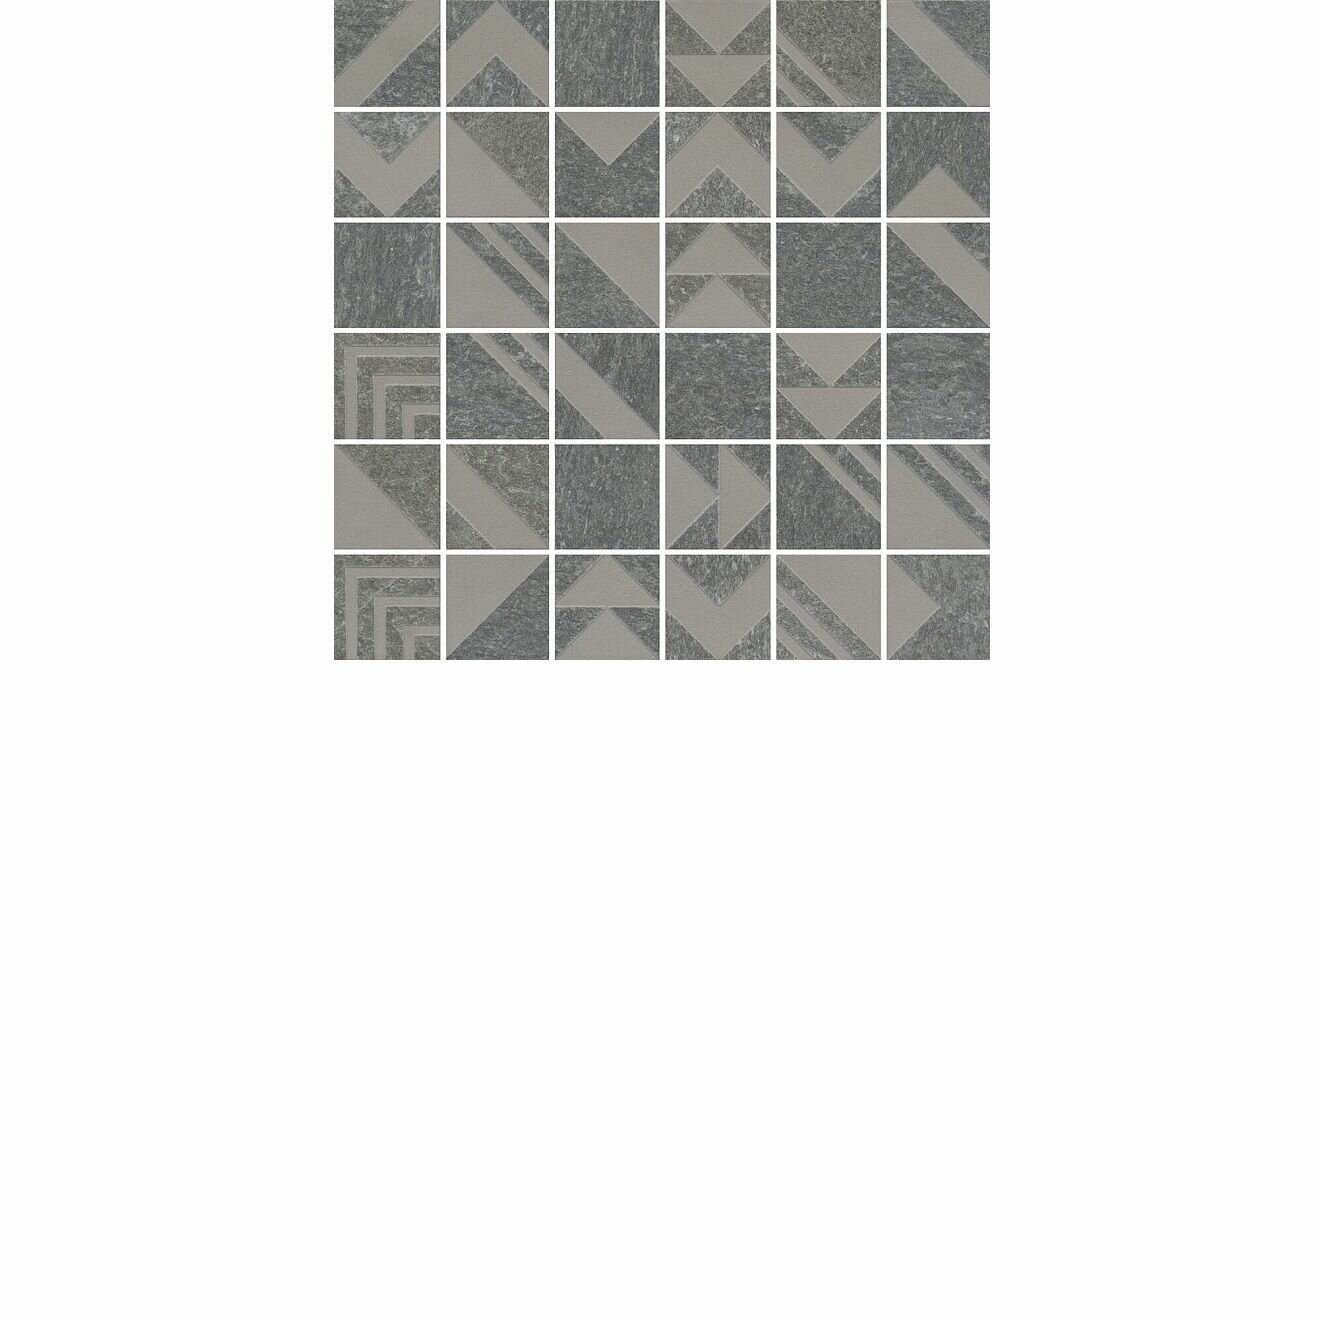 SBM014/DD204020 Про Нордик серый темный мозаичный 30x30x0,9 керам. декор мозаичный (гранит) Цена за 1 шт.